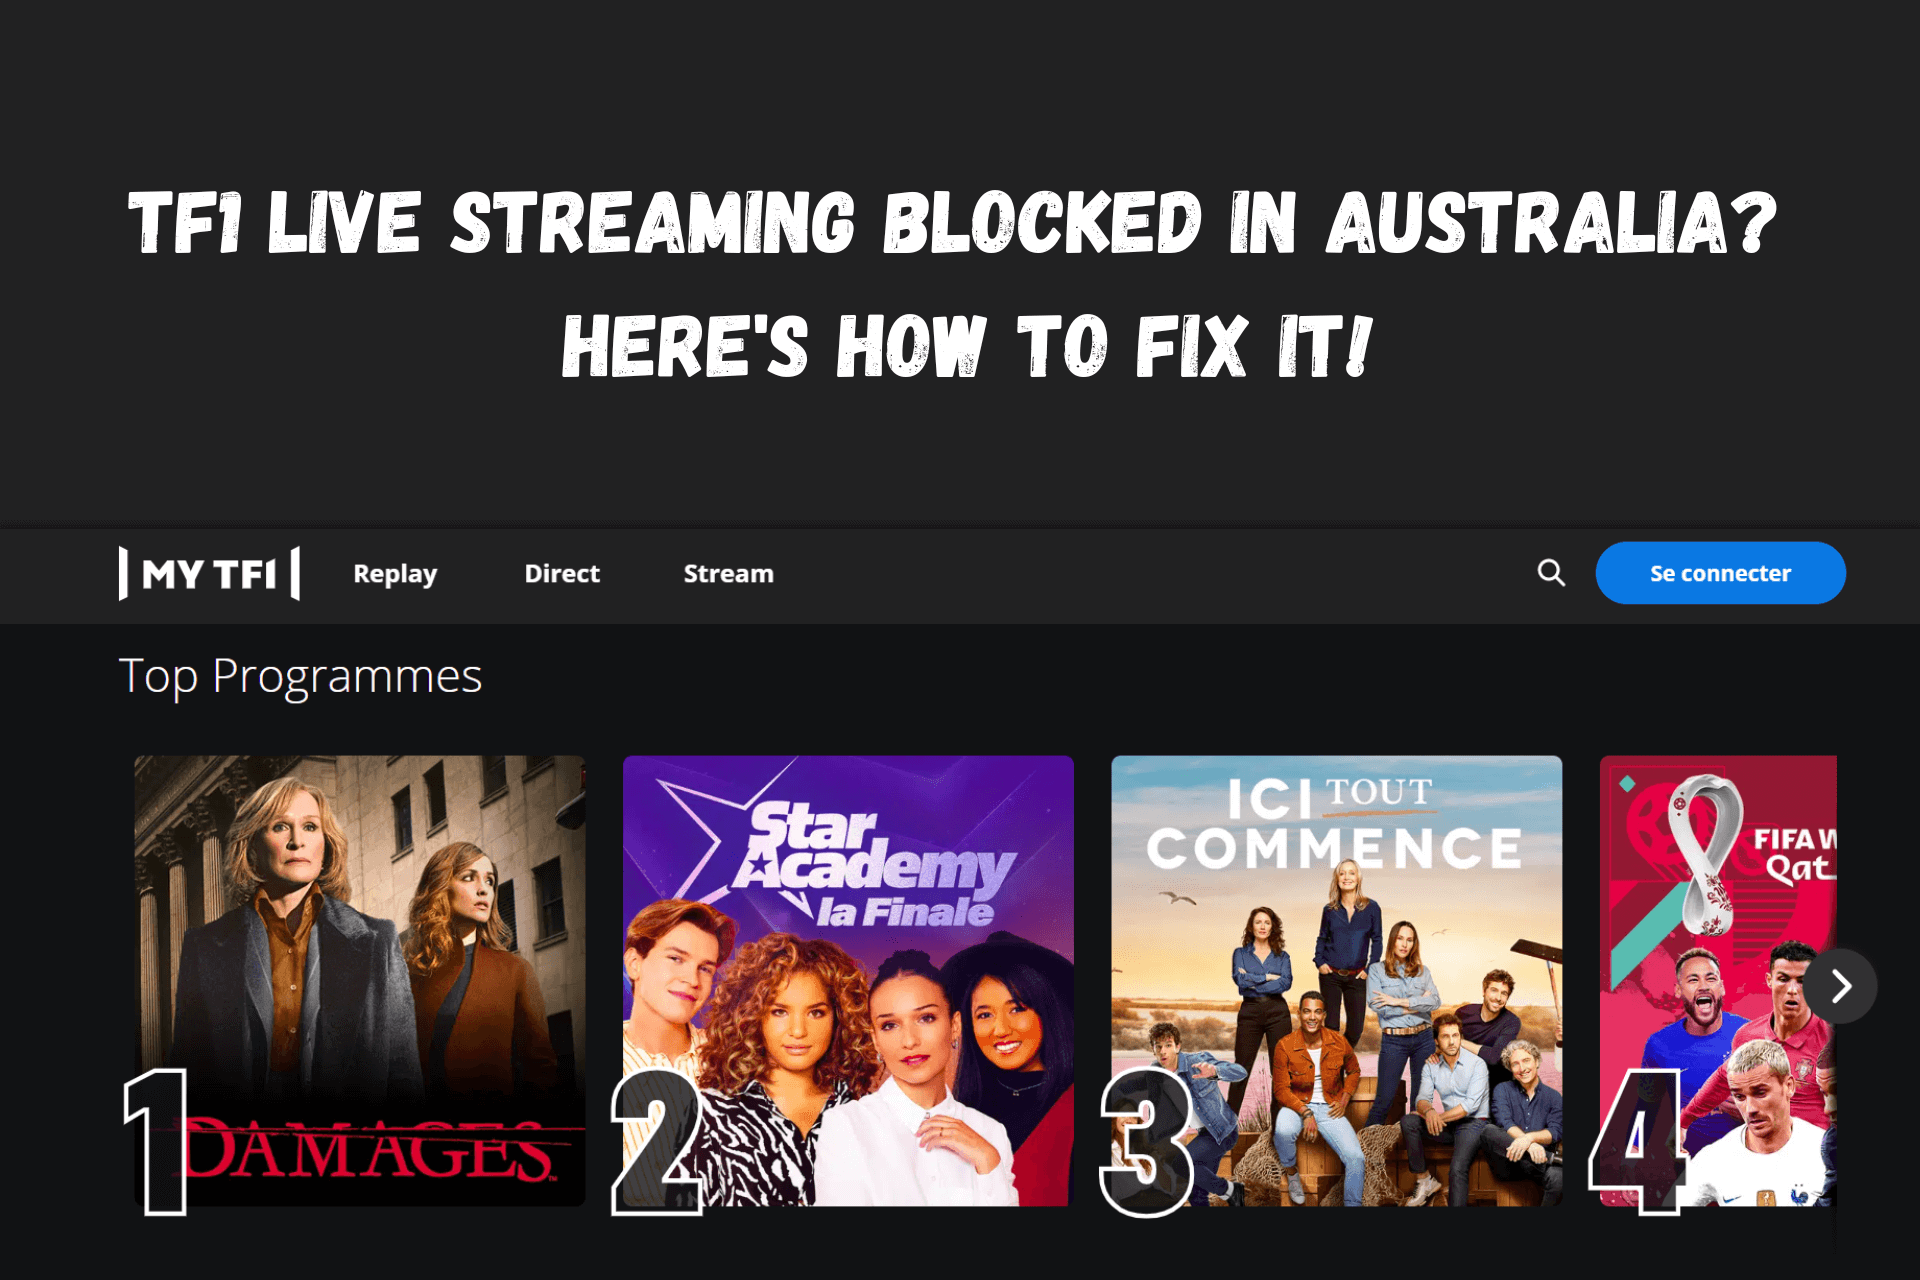 TF1 Live streaming blocked in Australia